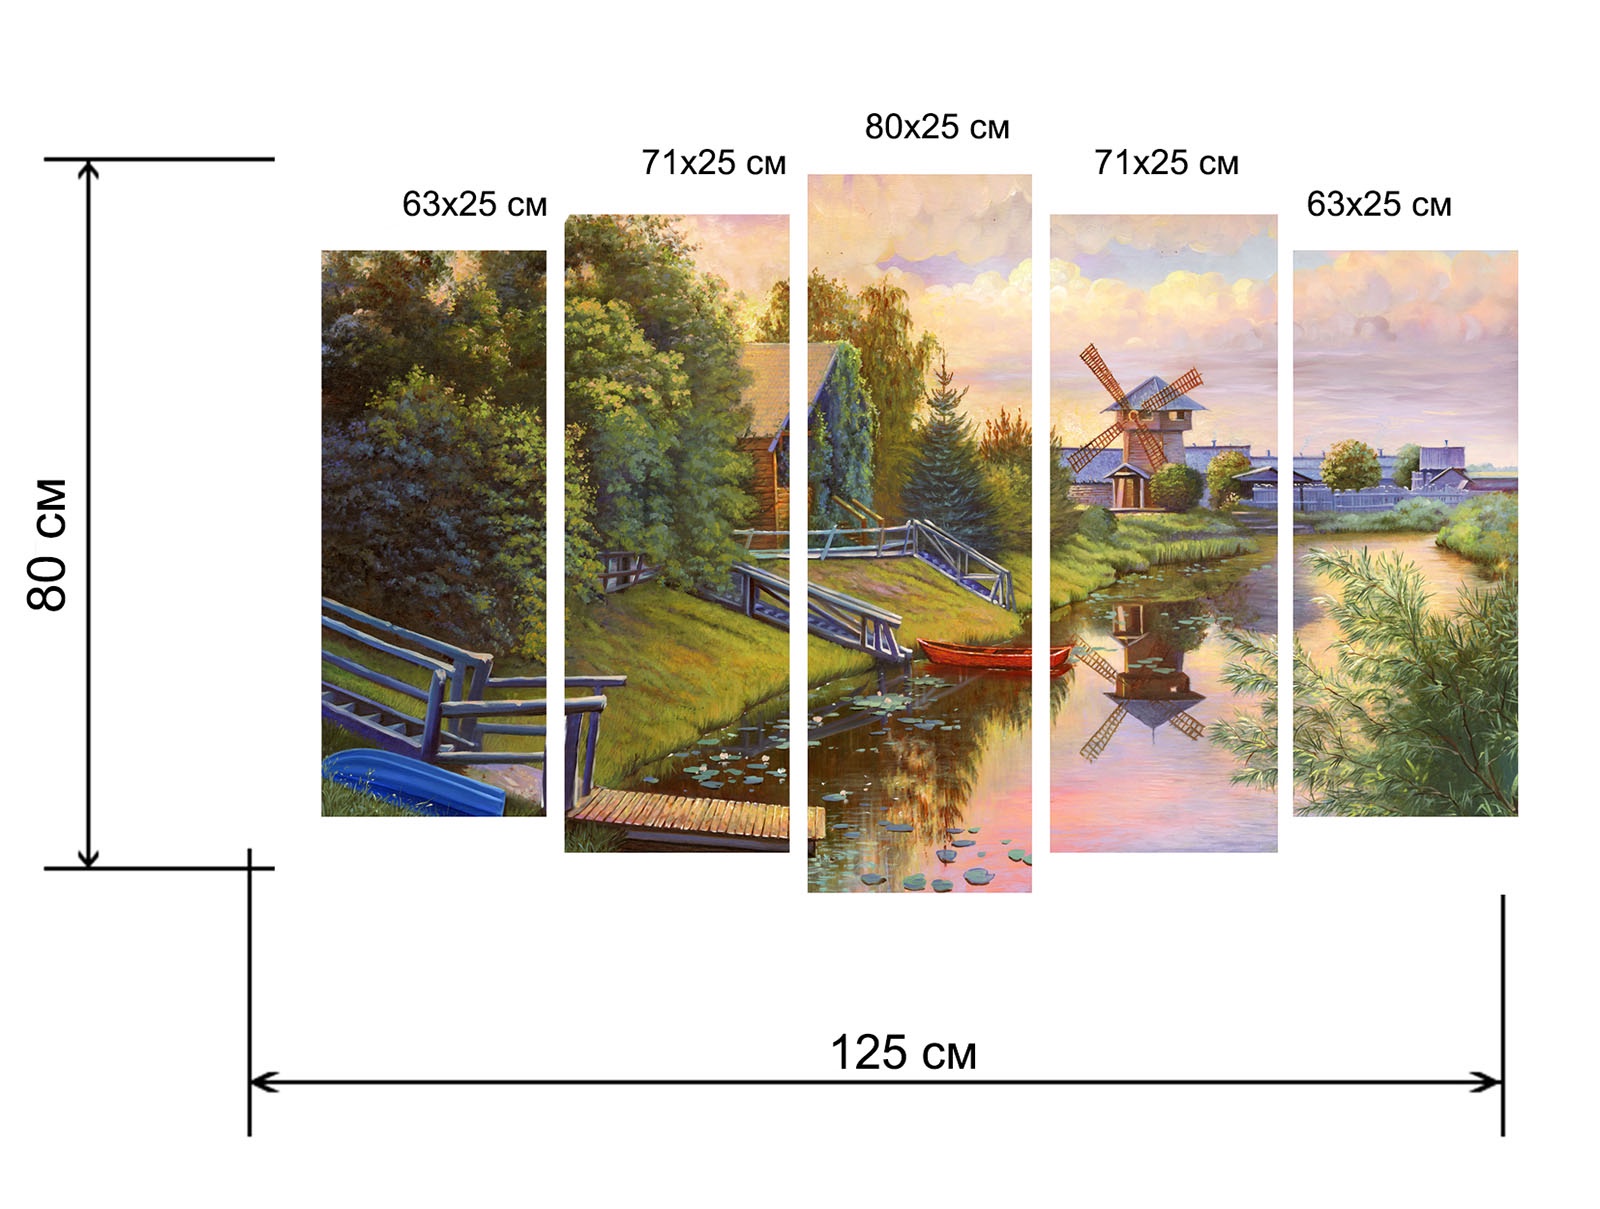 Как повесить картину модульную на стену из 5 частей правильно фото пошагово